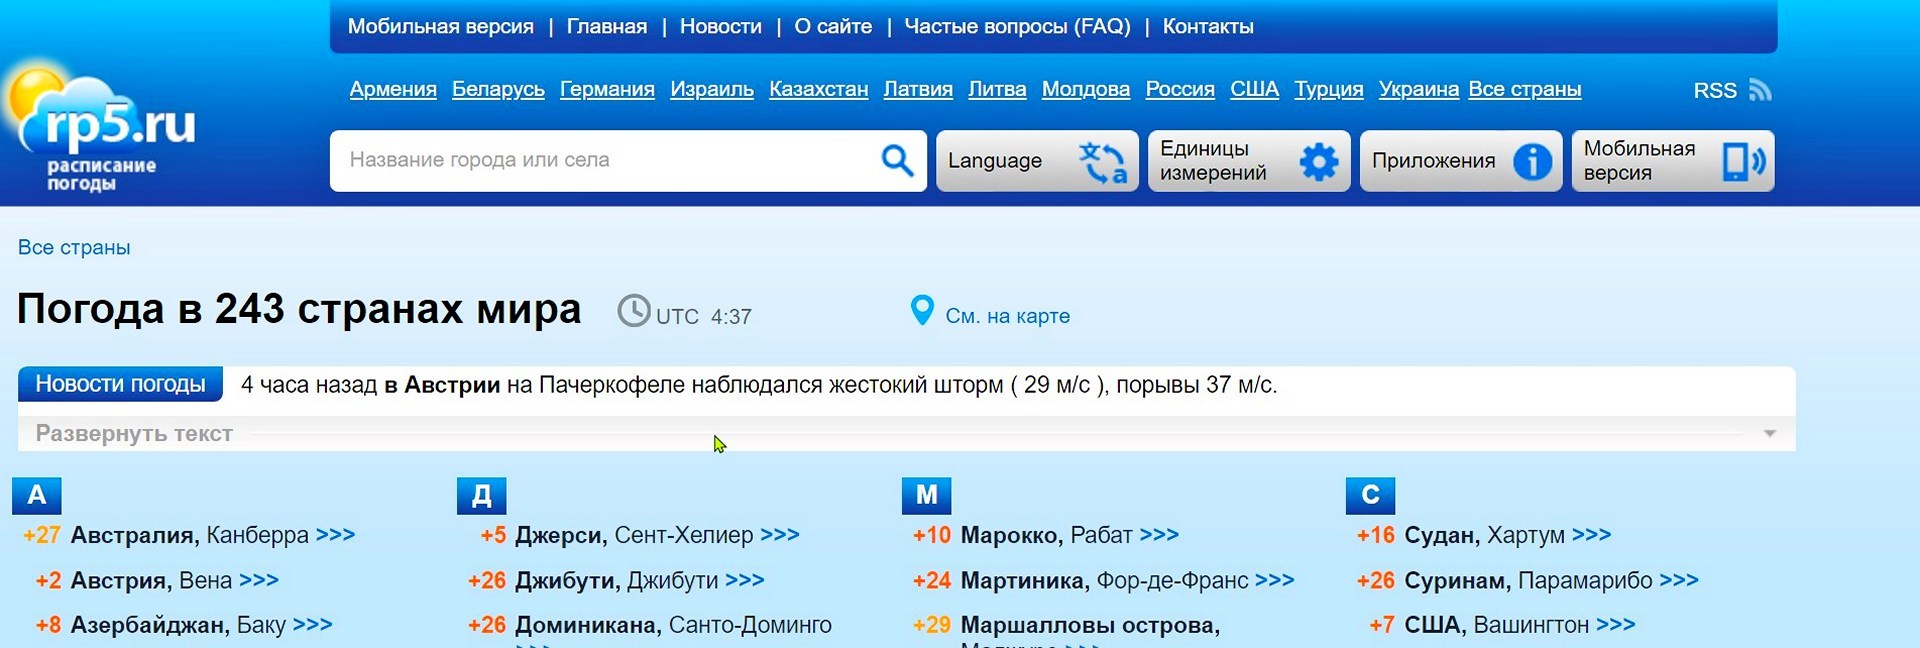 Сайт точного прогноза погоды rp5.ru